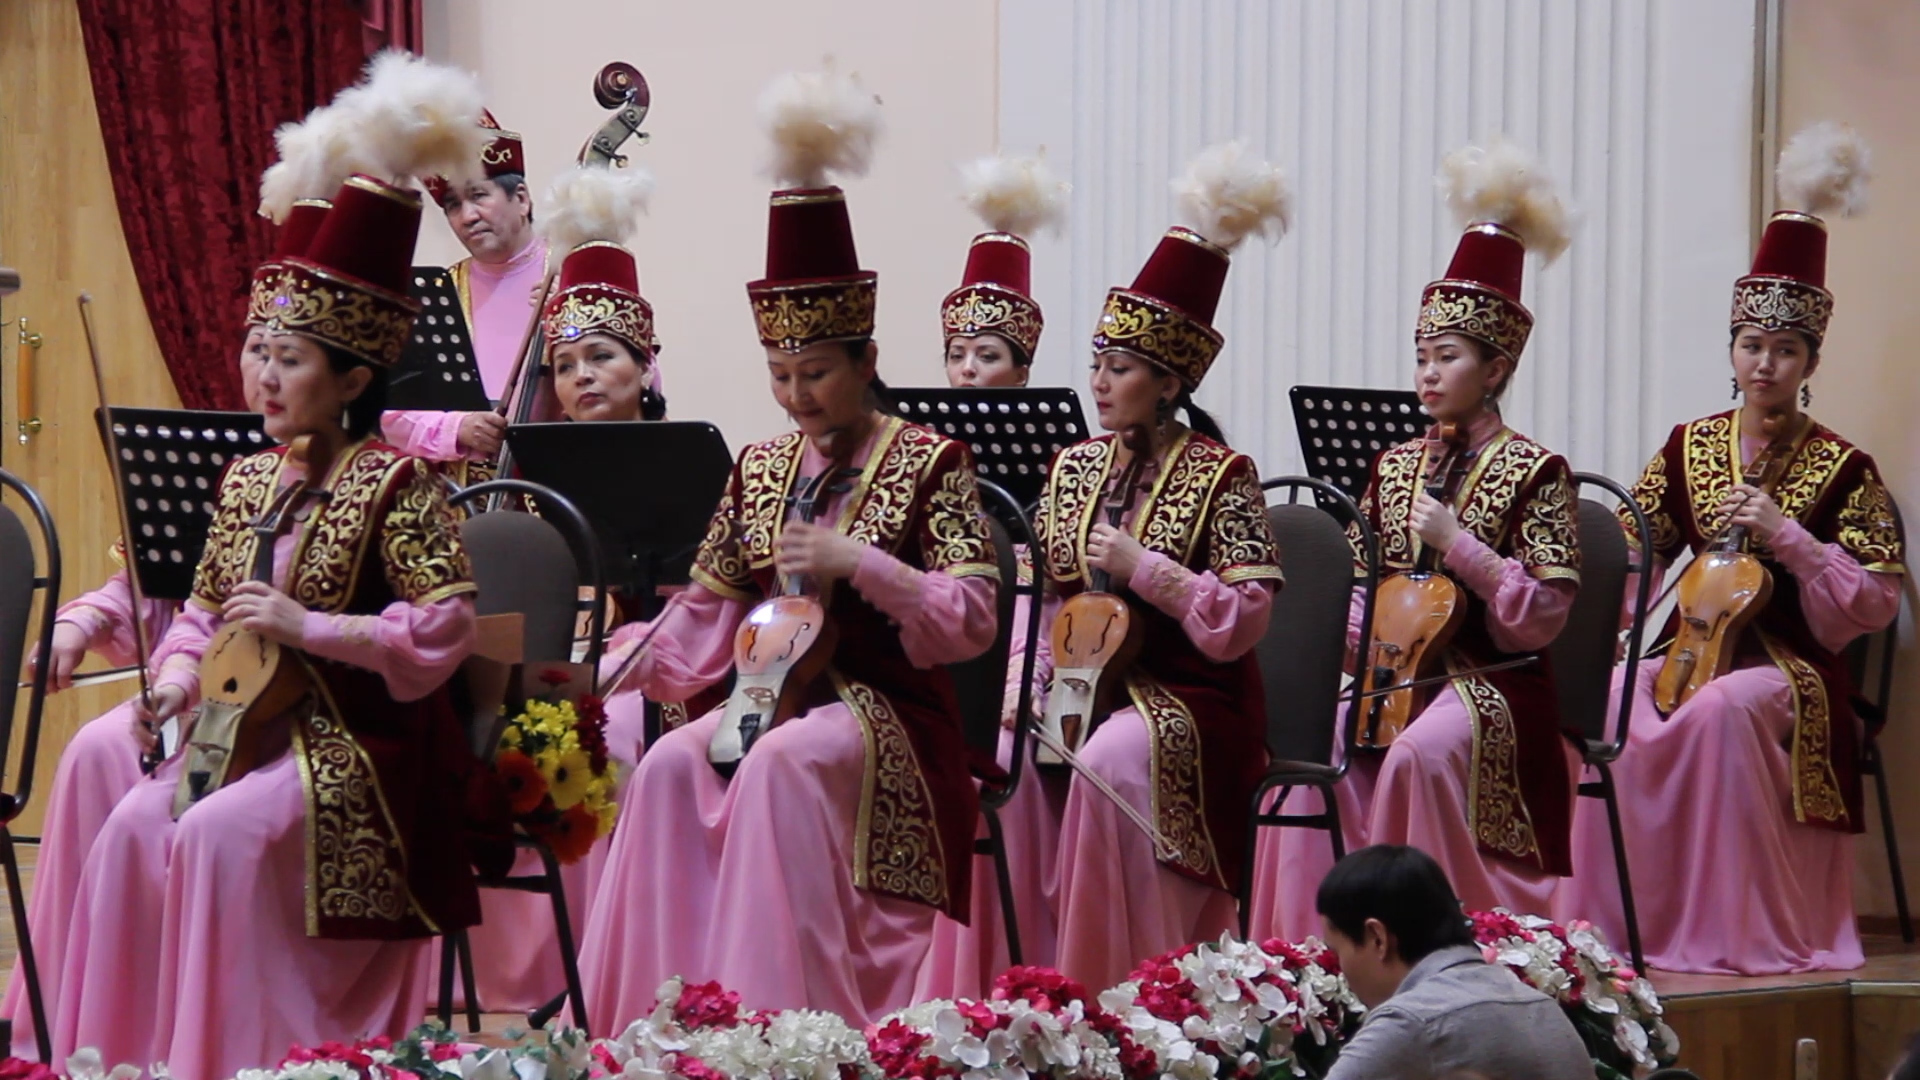 Казахская музыка веселая